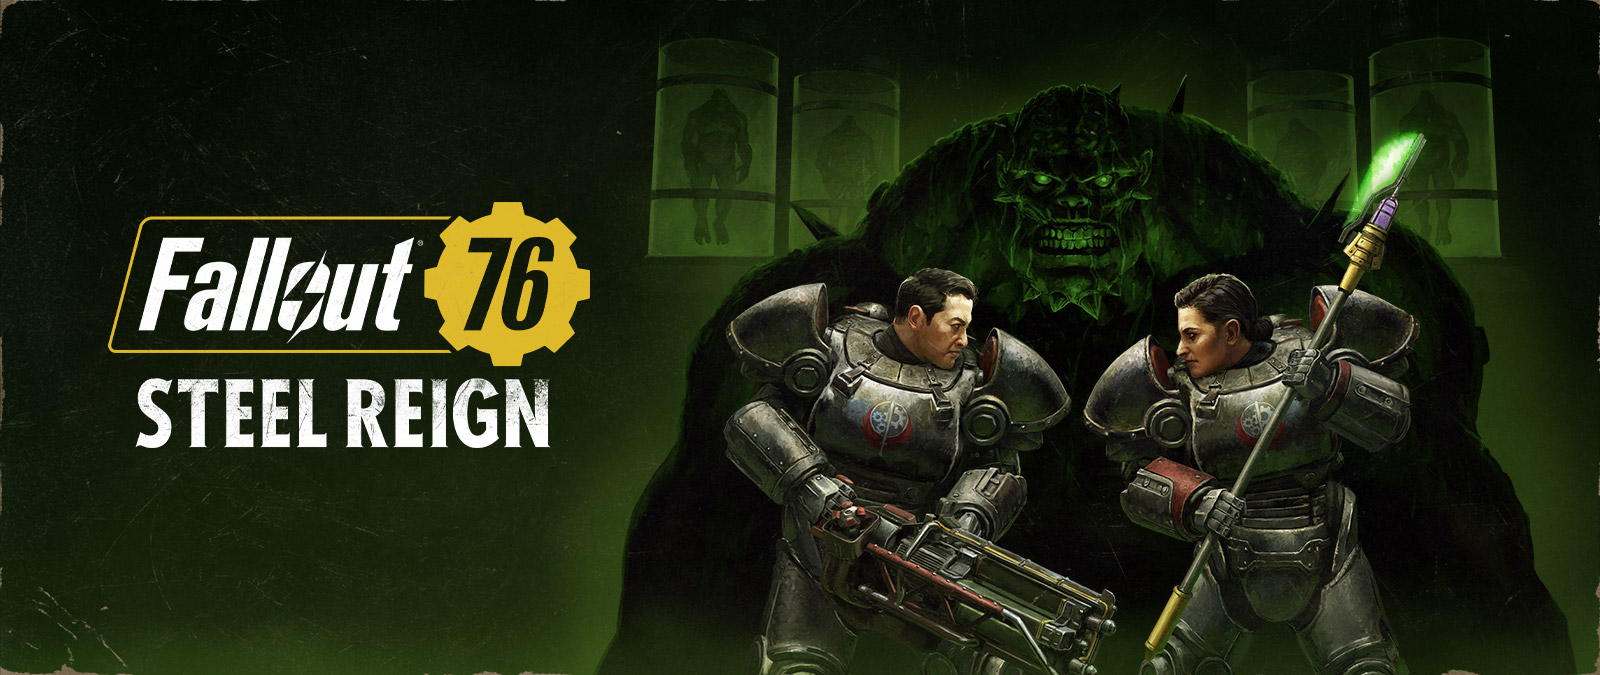 Fallout 76, Steel Reign, zwei Charaktere in Mech-Anzügen stehen sich mit einem großen Monster im Hintergrund gegenüber.